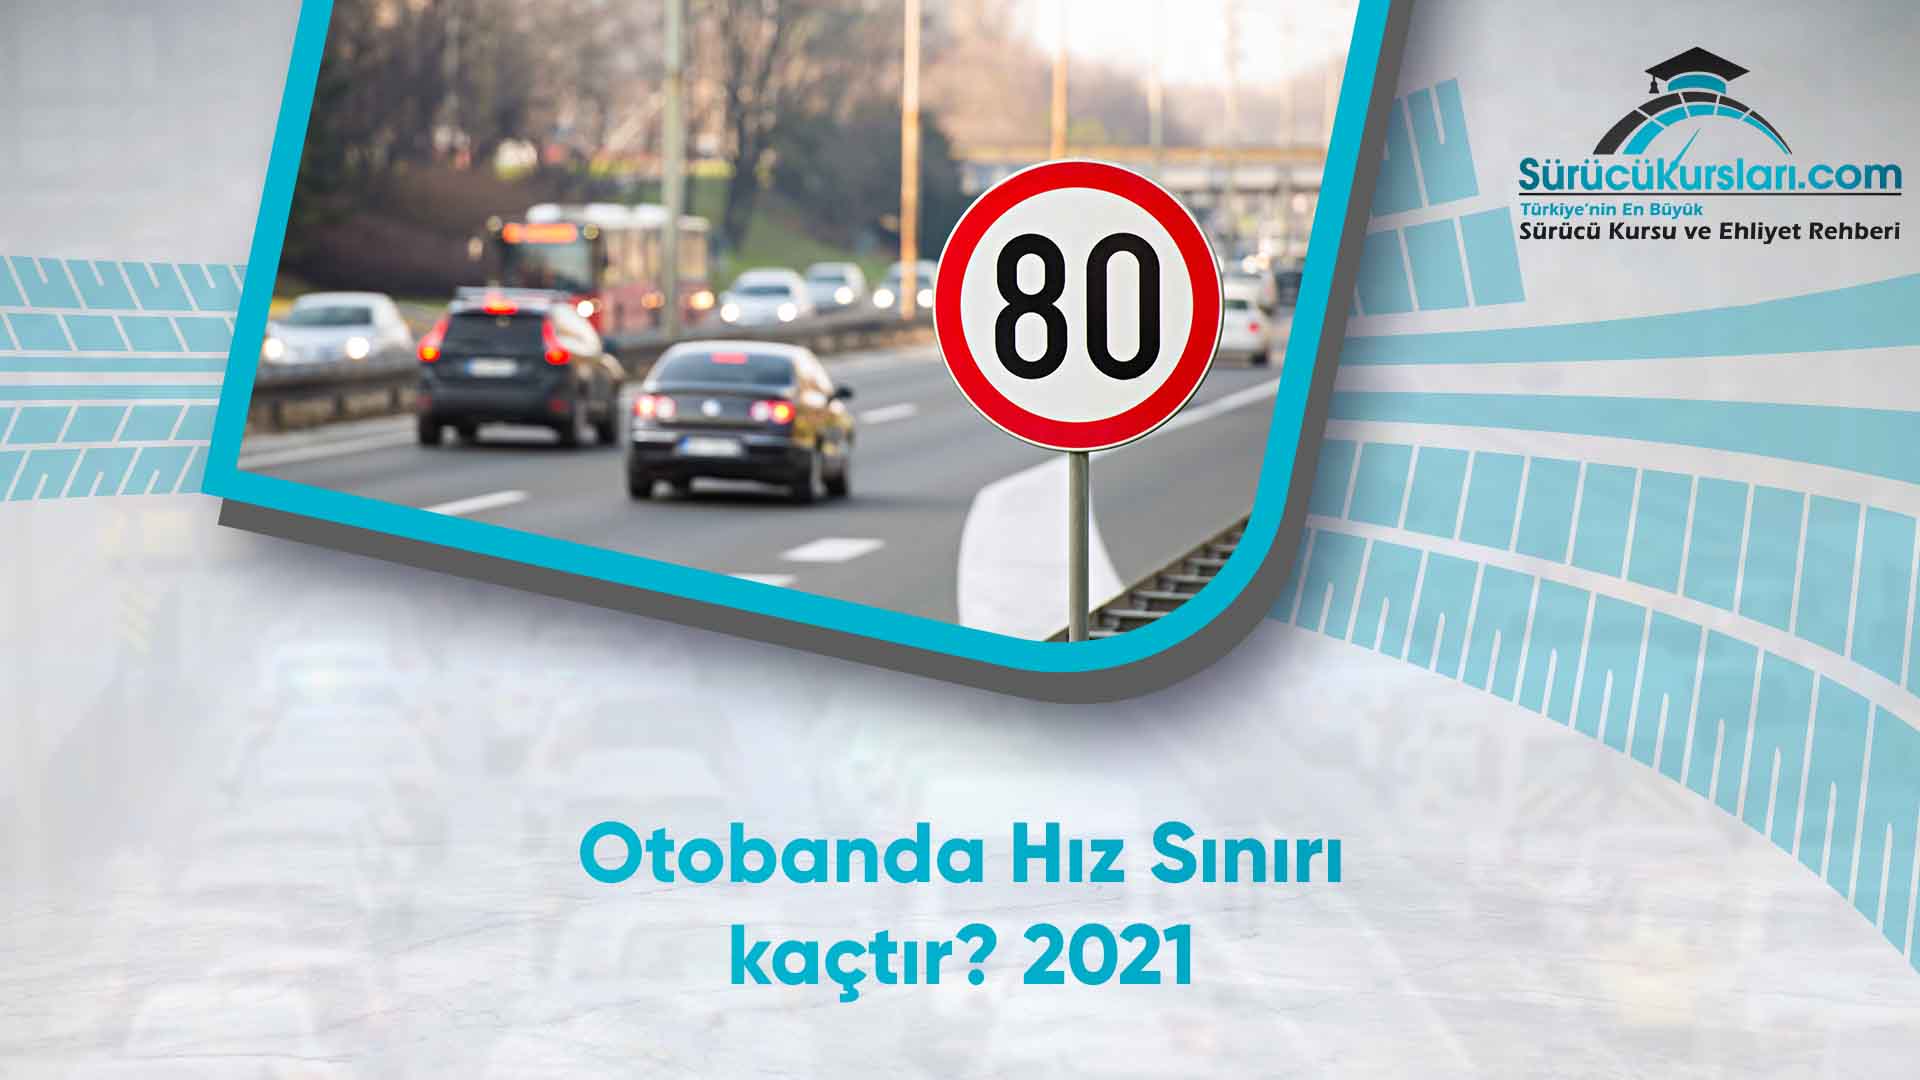 Otobanda Hız Sınırı kaçtır - 2021